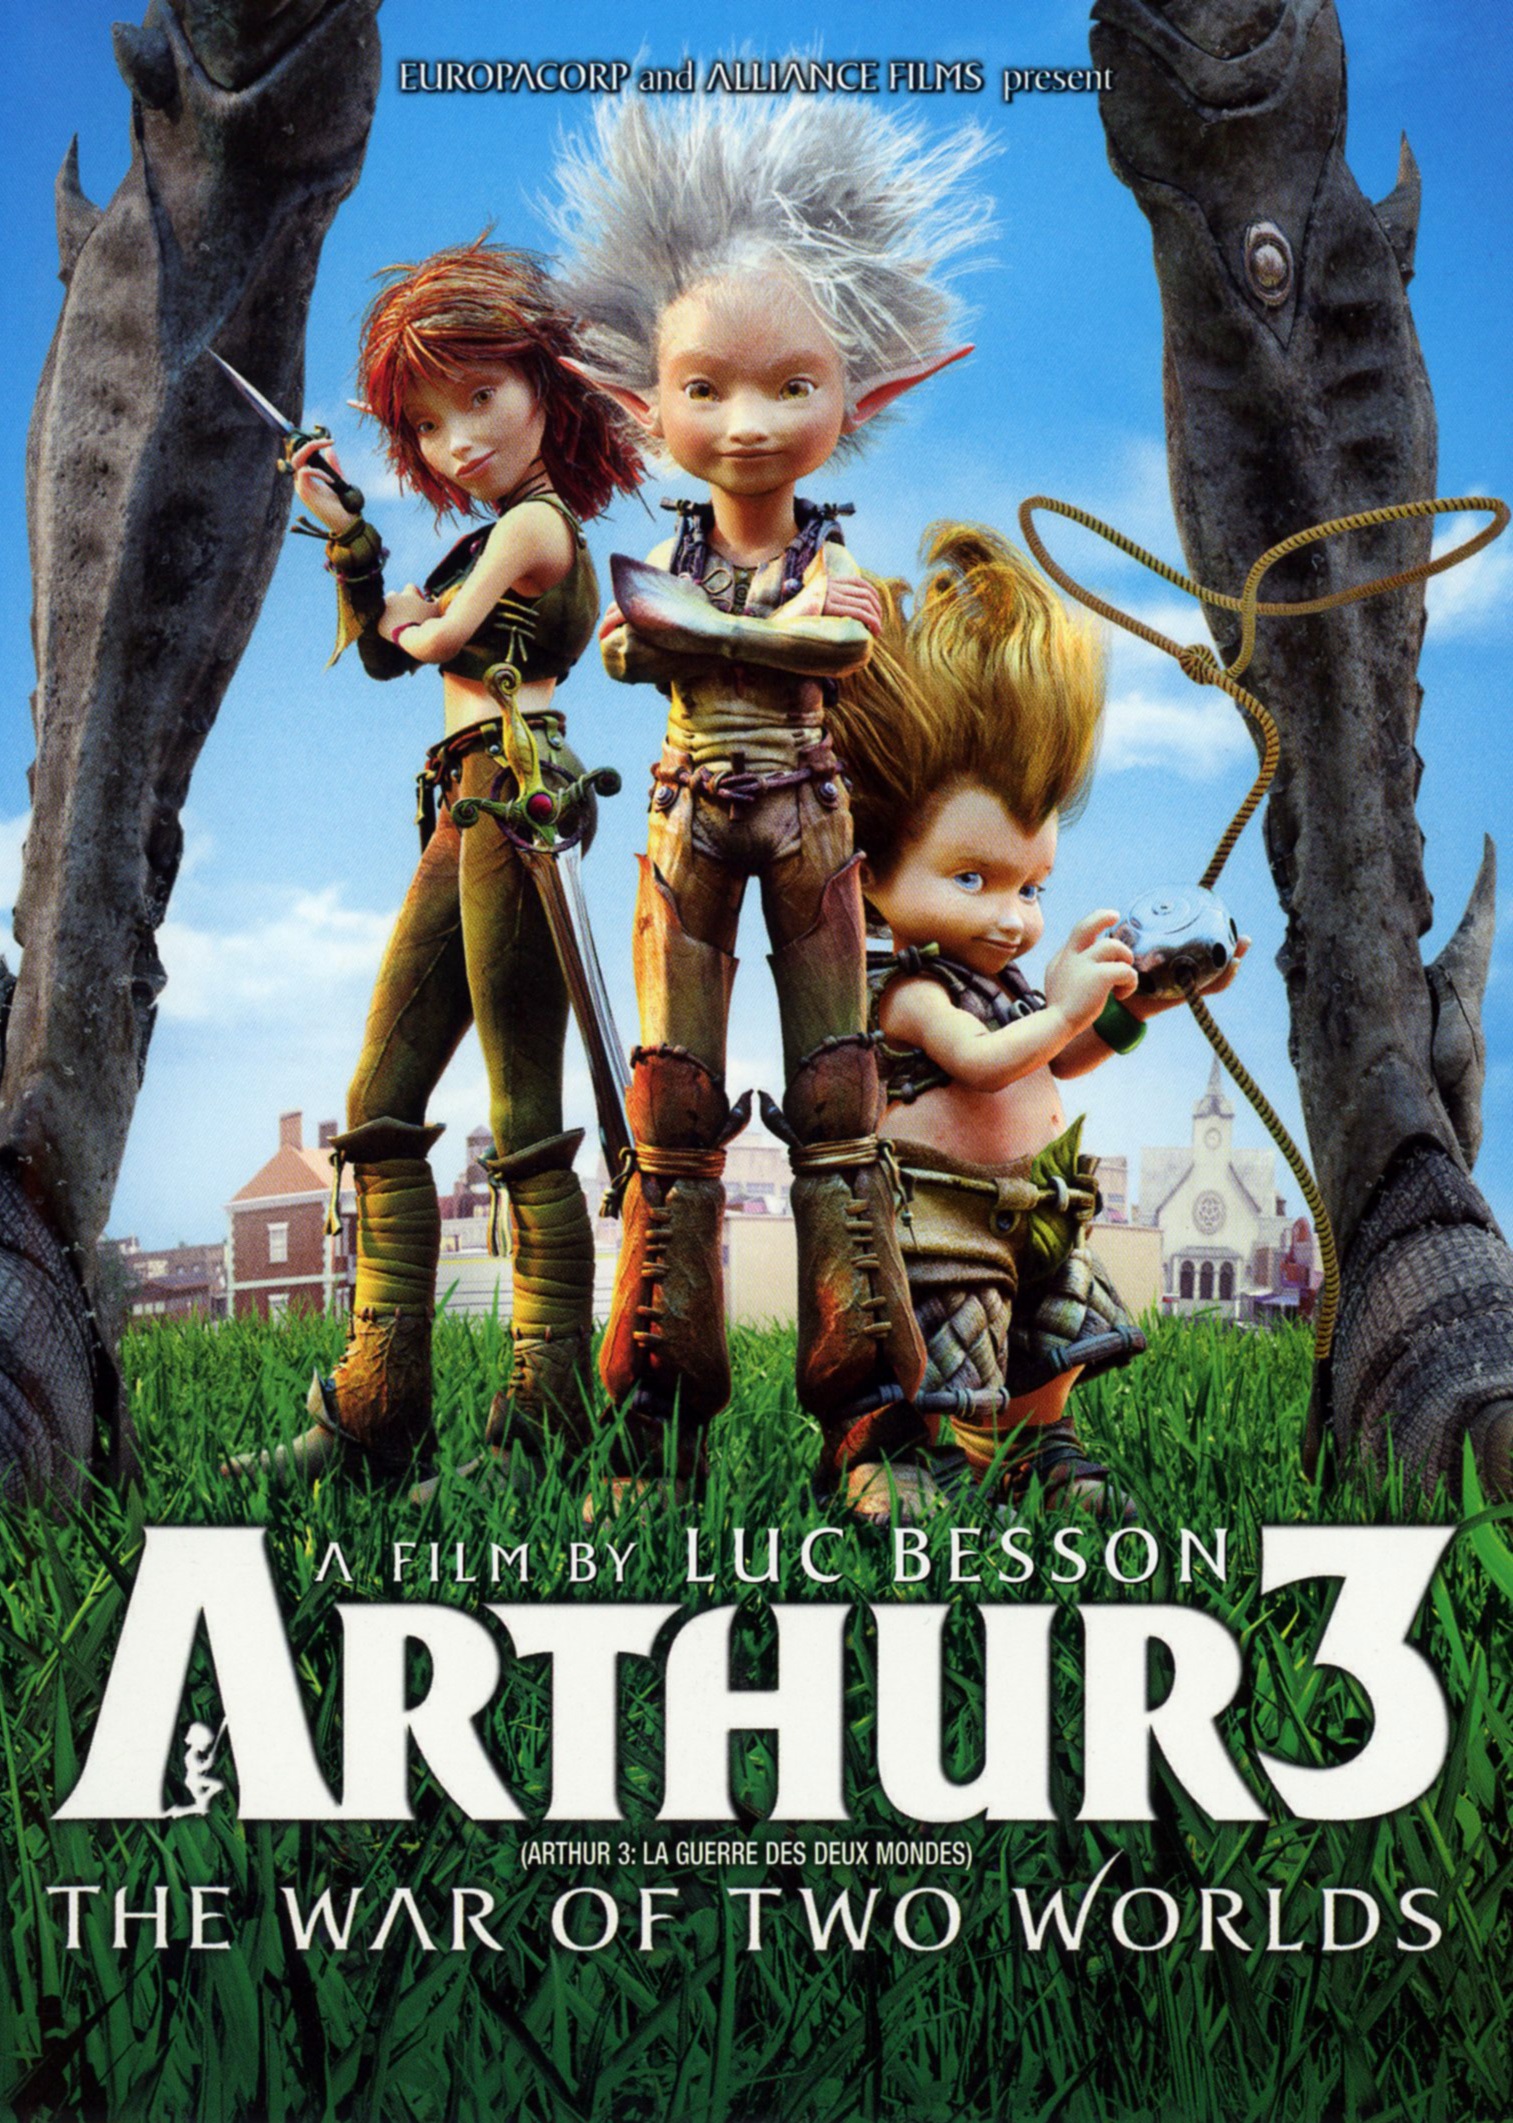 ดูหนังออนไลน์ฟรี Arthur 3 The War of the Two Worlds (2010) อาร์เธอร์ 3 ศึกสองพิภพมหัศจรรย์ หนังเต็มเรื่อง หนังมาสเตอร์ ดูหนังHD ดูหนังออนไลน์ ดูหนังใหม่